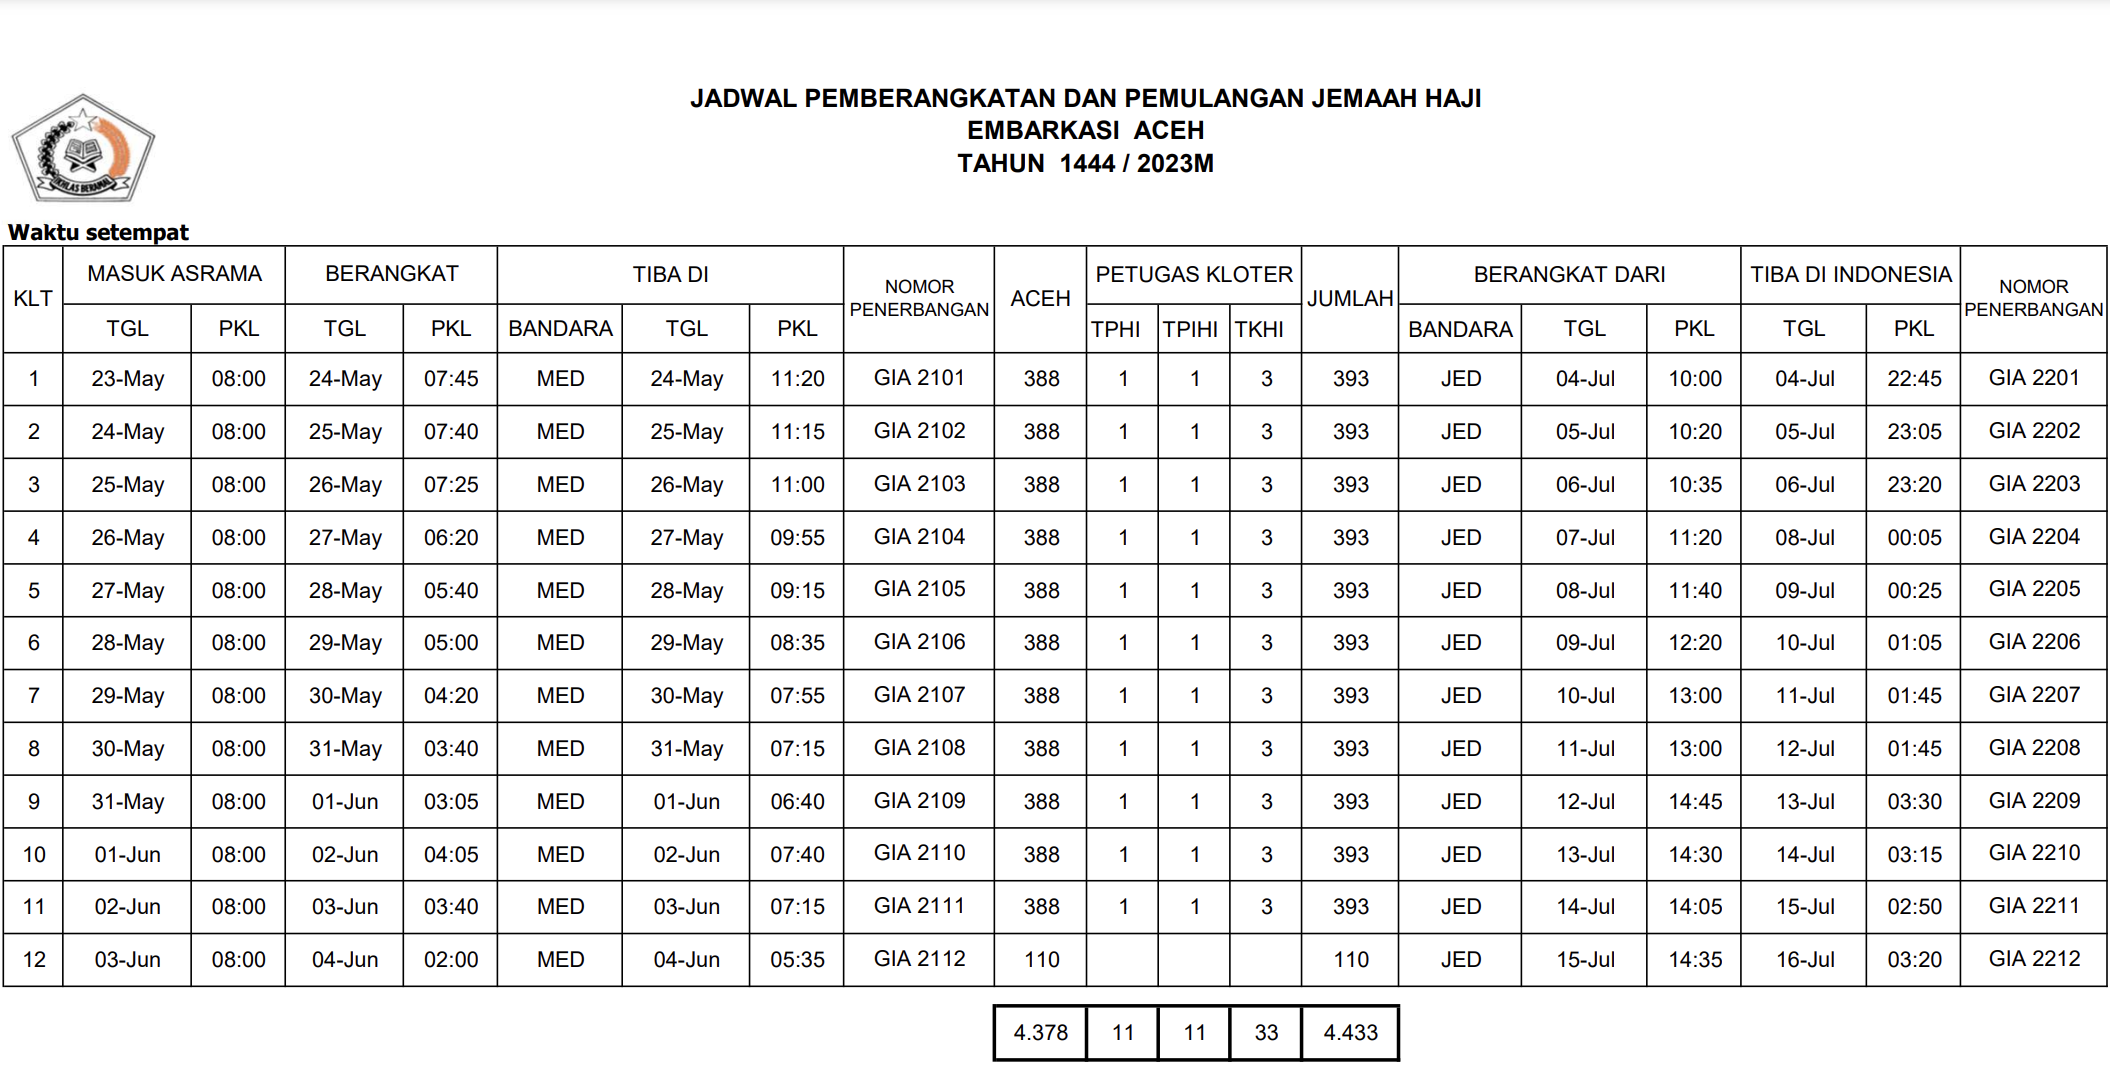 Jadwal Pemberangkatan dan Pemulangan Jemaah Haji Embarkasi Aceh 2023